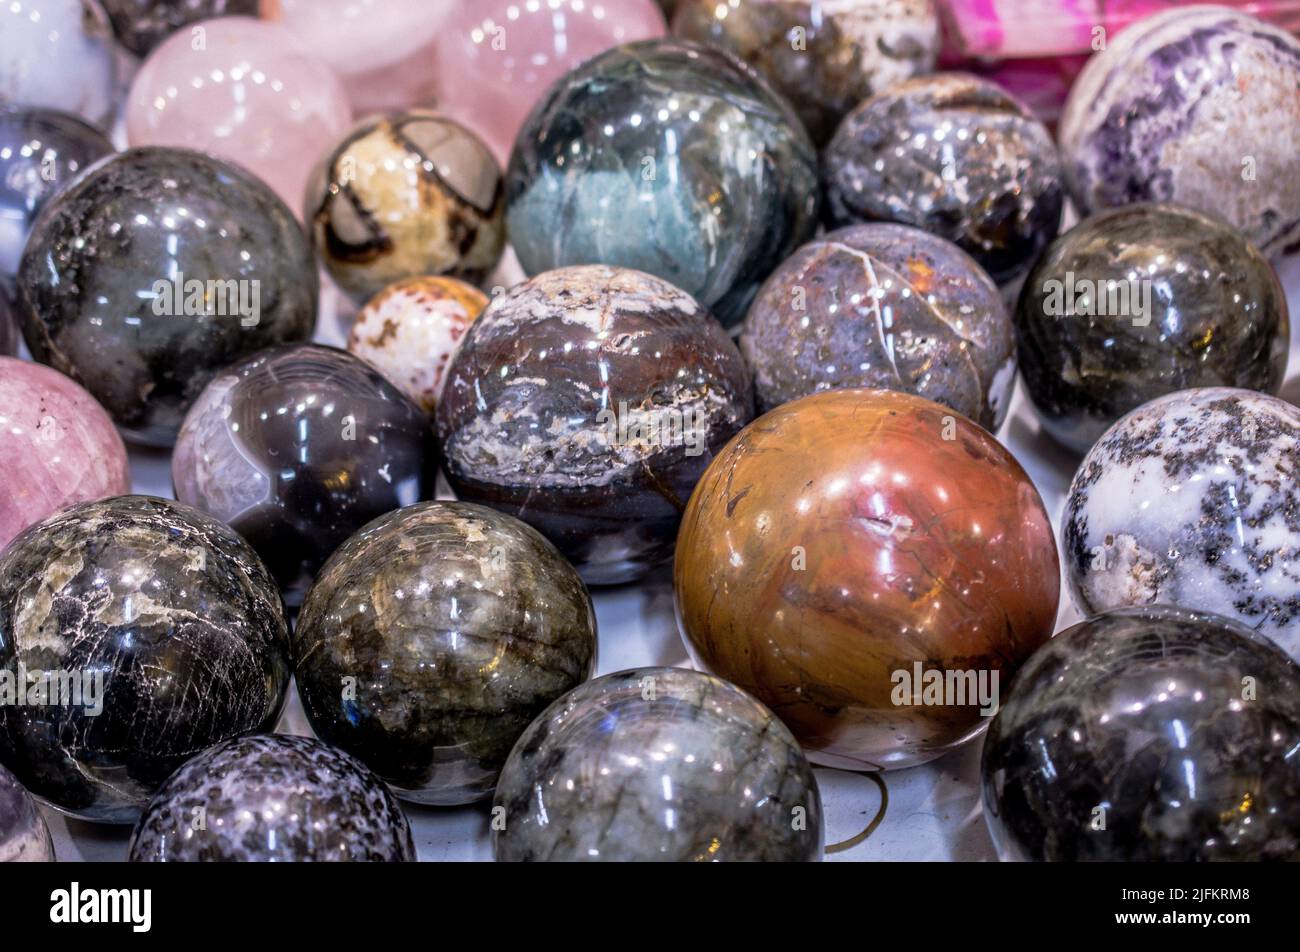 Bolas de piedras semipreciosas como espécimen natural de roca mineral. Foto de stock